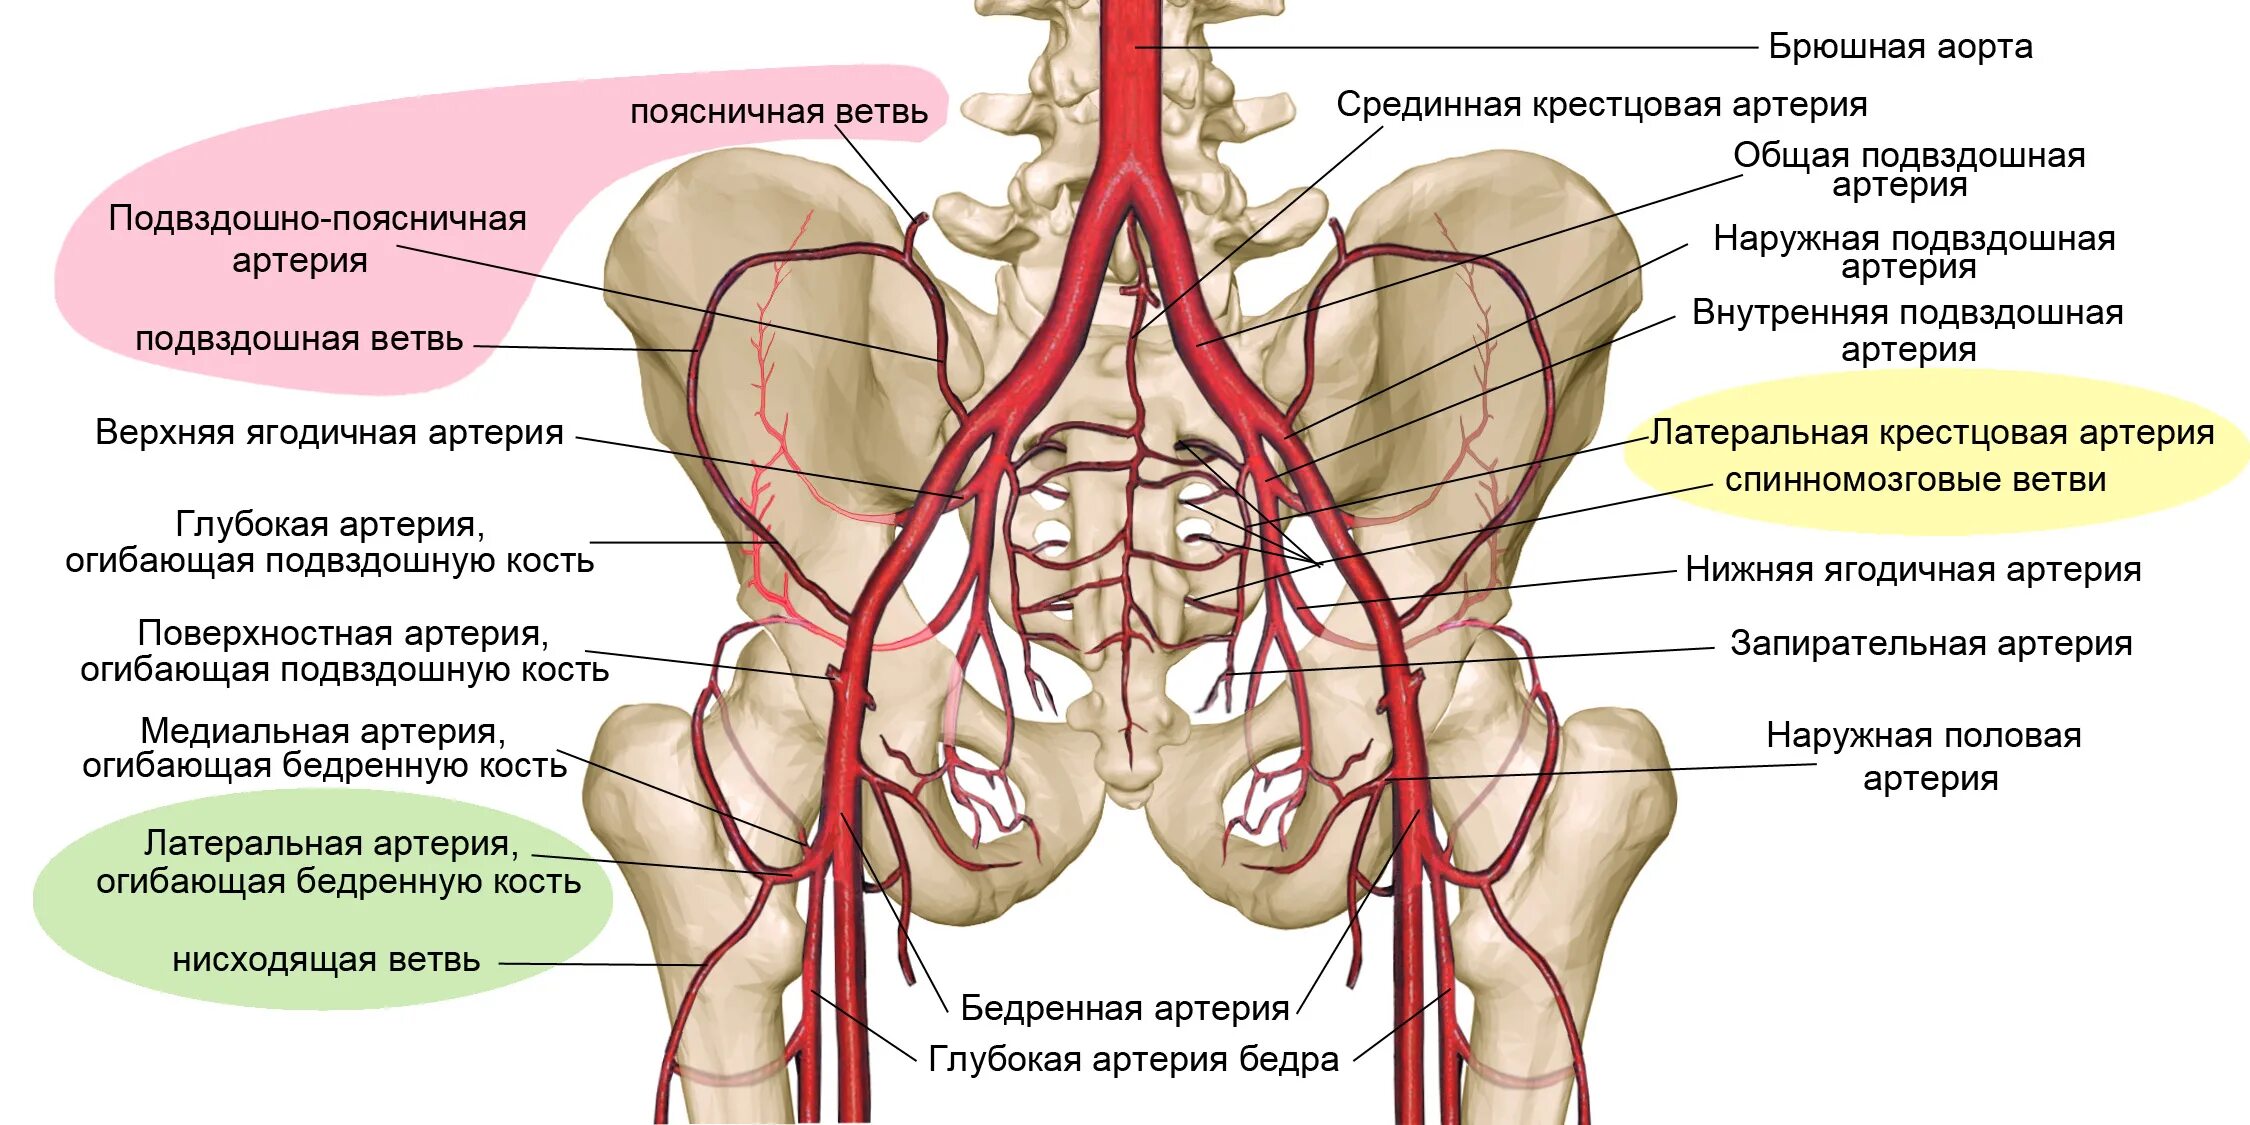 Кровообращение малого таза у женщин. Ветви внутренней подвздошной артерии. Ветви общей подвздошной артерии схема. Ветви наружной подвздошной артерии анатомия. Ветви внутренней подвздошной артерии анатомия.